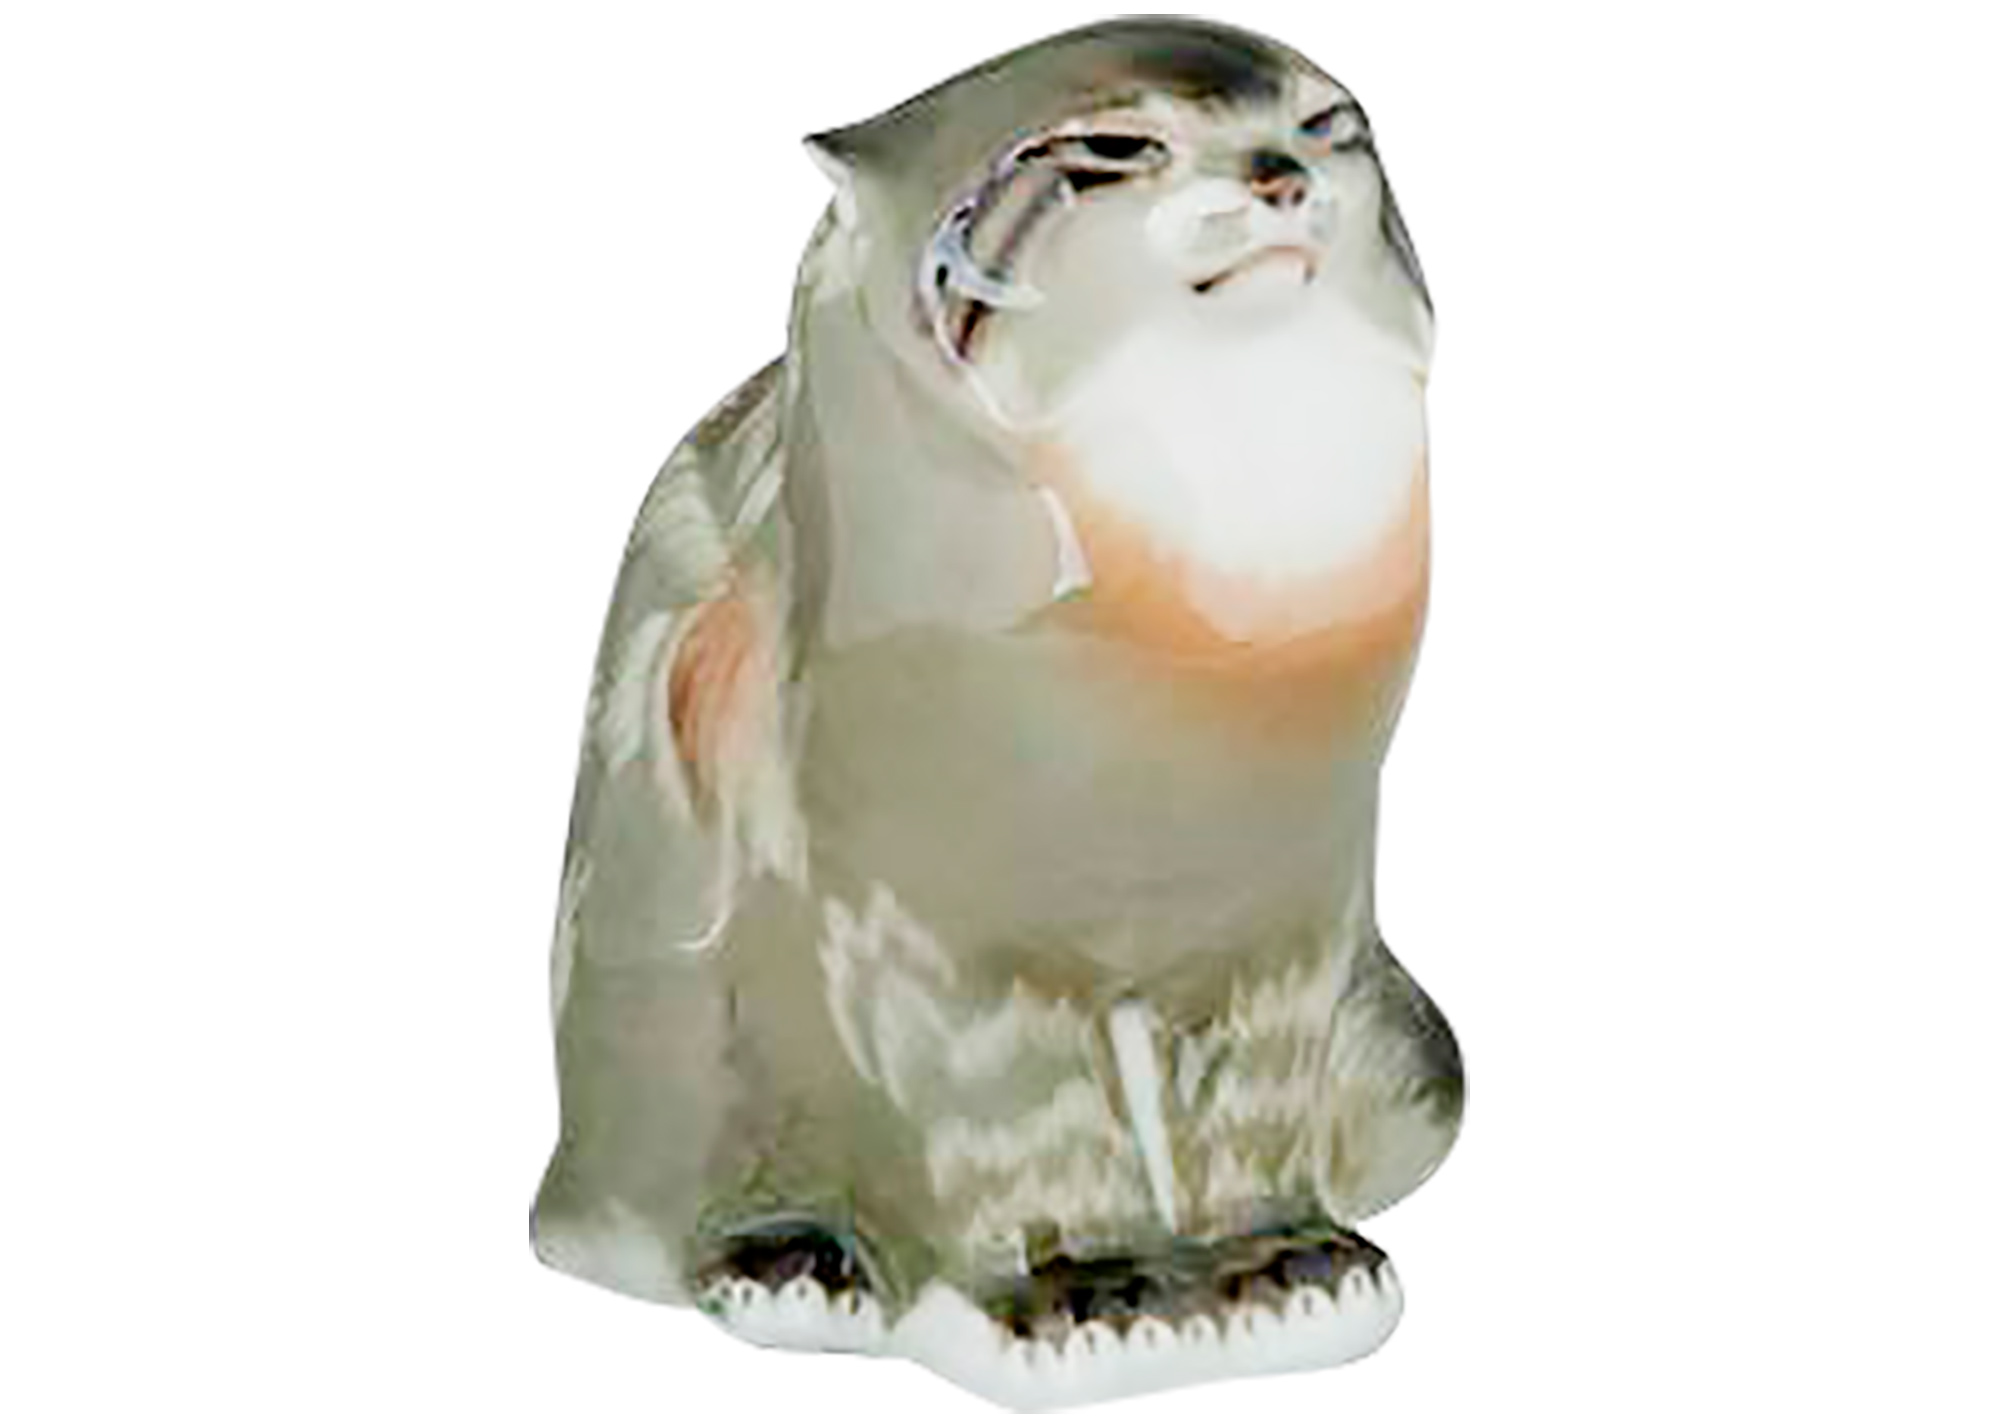 Buy Porcelain Wildcat Figurine at GoldenCockerel.com